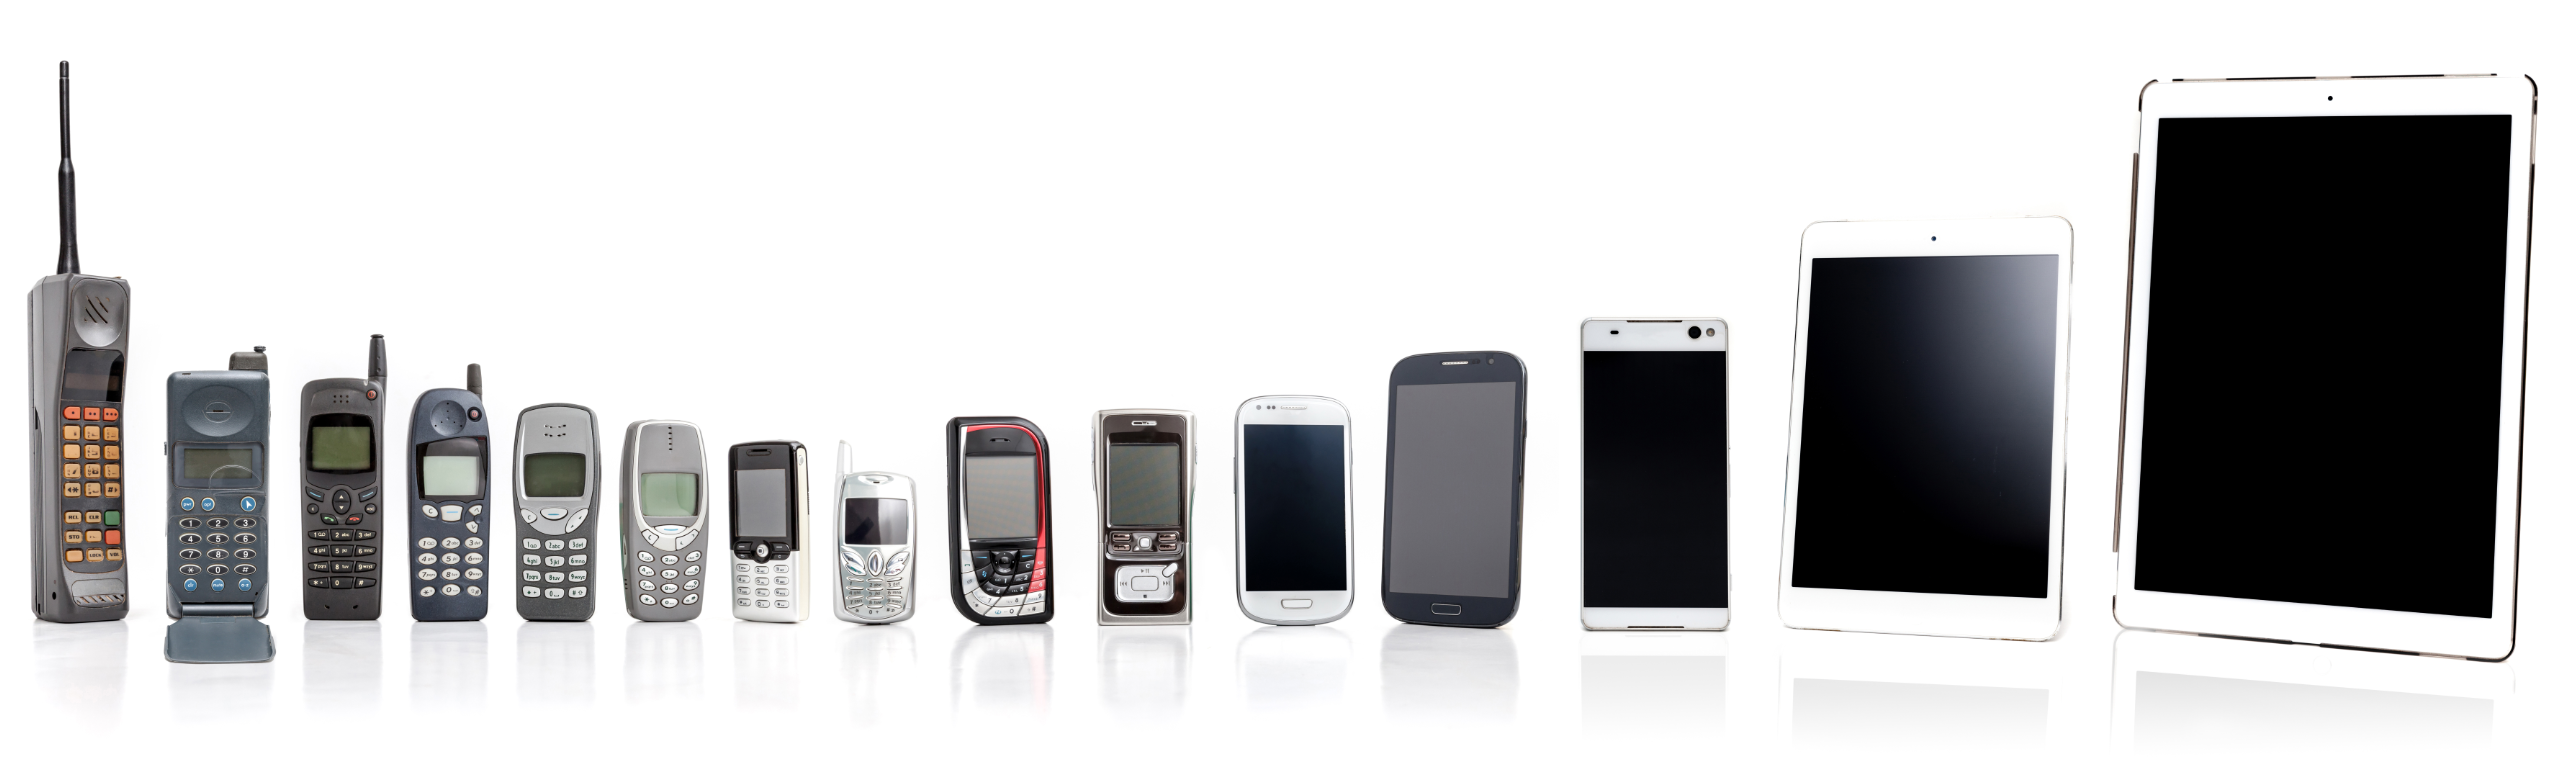 verschiedenste Mobiltelefone von Einführung bis heute